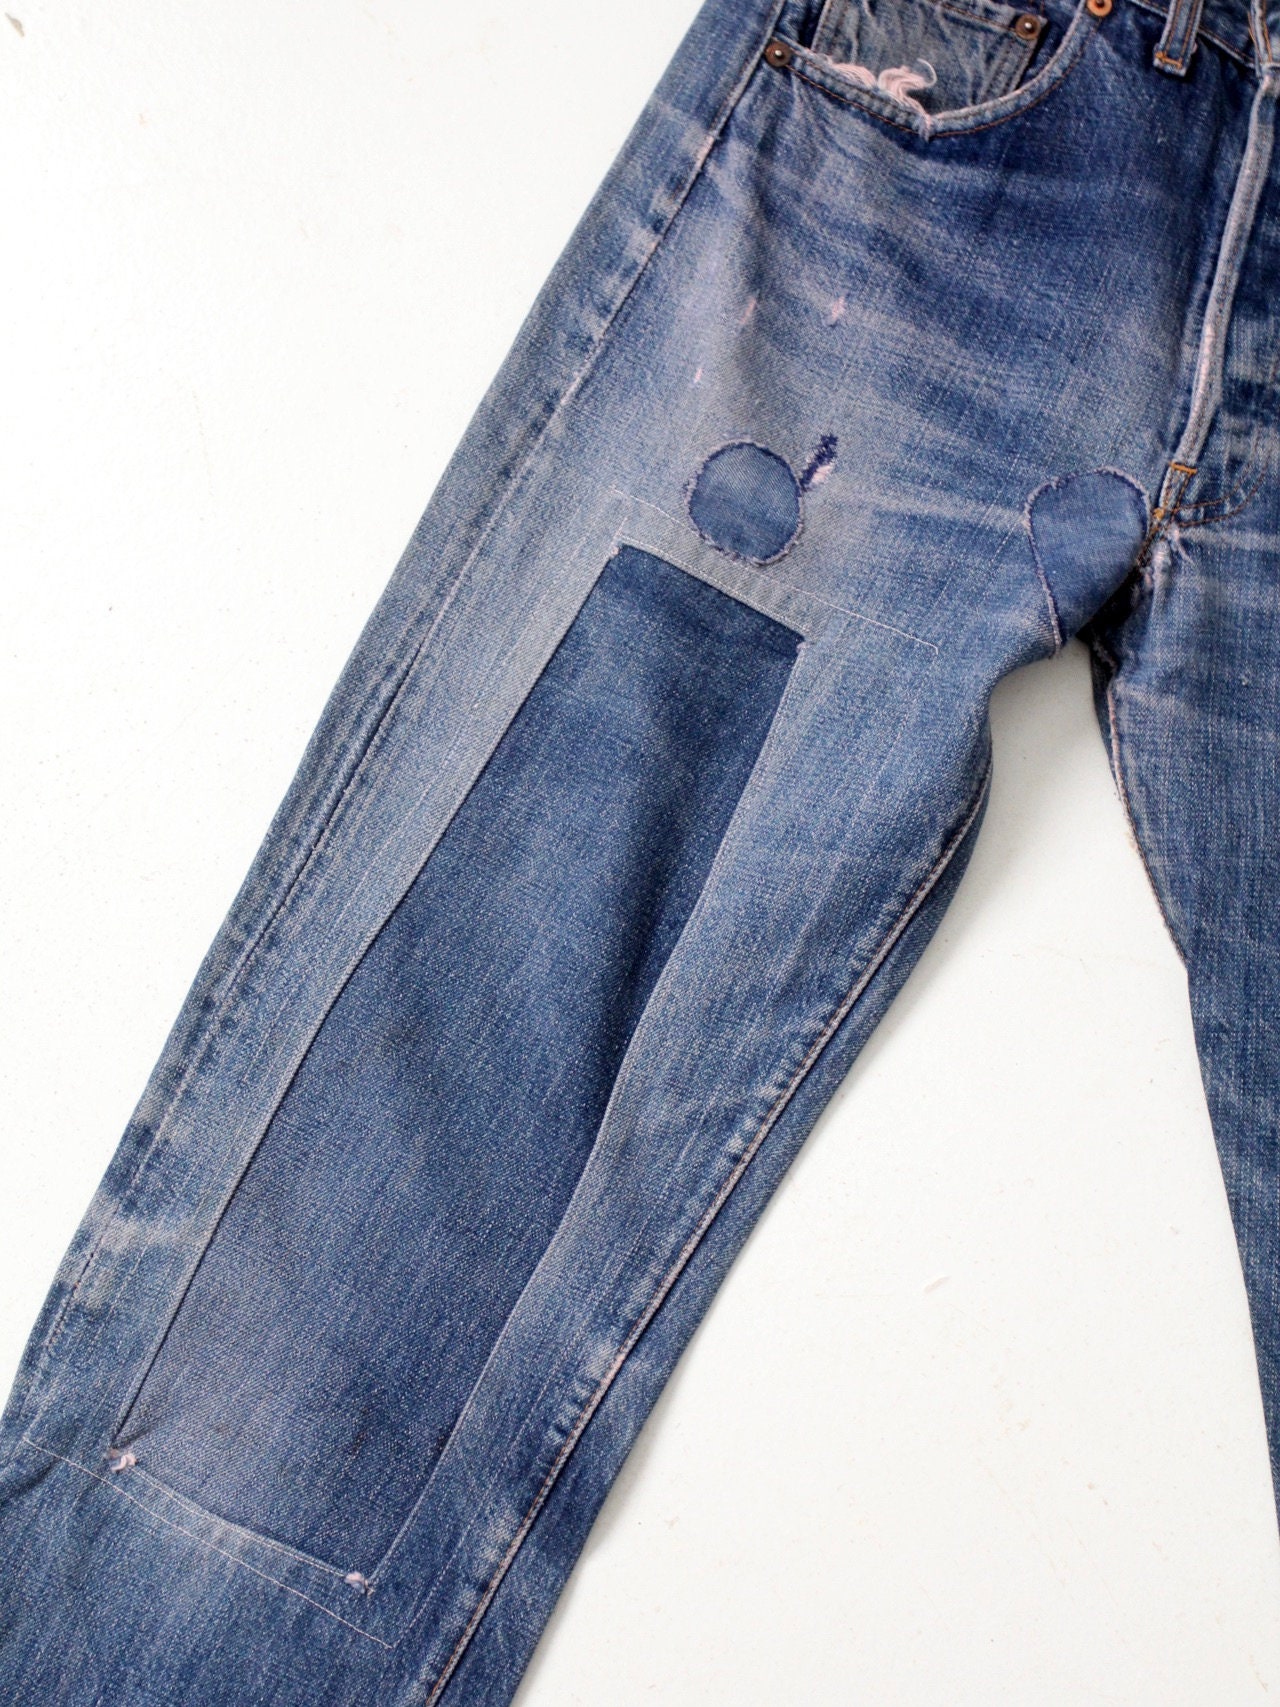 Levis 501 Big E Selvedge Jeans Vintage Levi's Red Line - Etsy